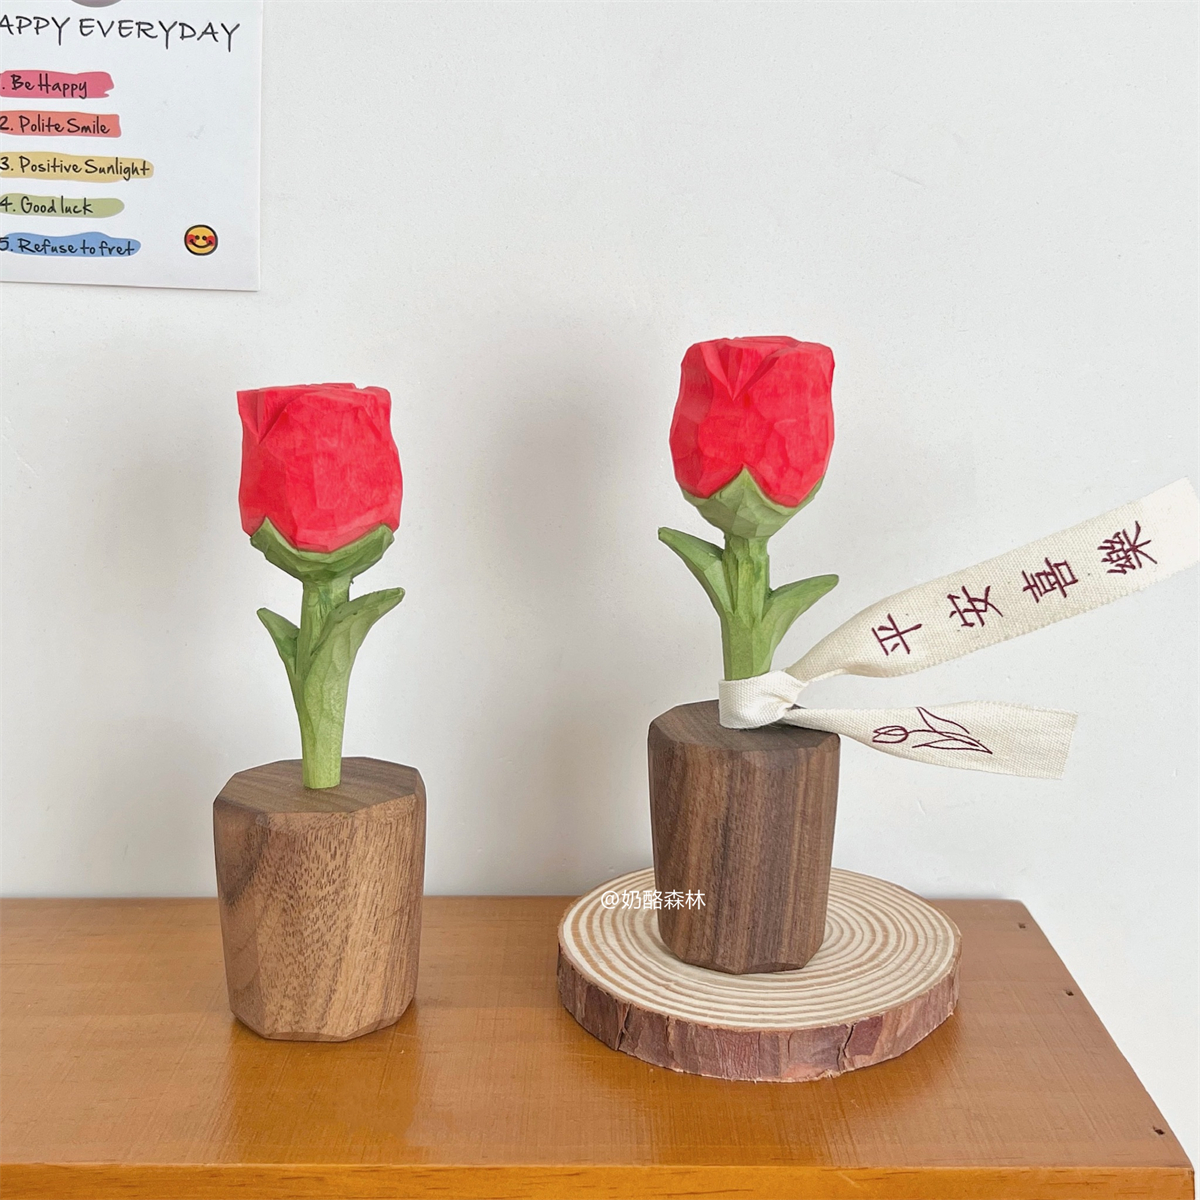 木雕玫瑰花 纯手工治愈系祝福语木质摆件 北欧创意生日情人节礼物